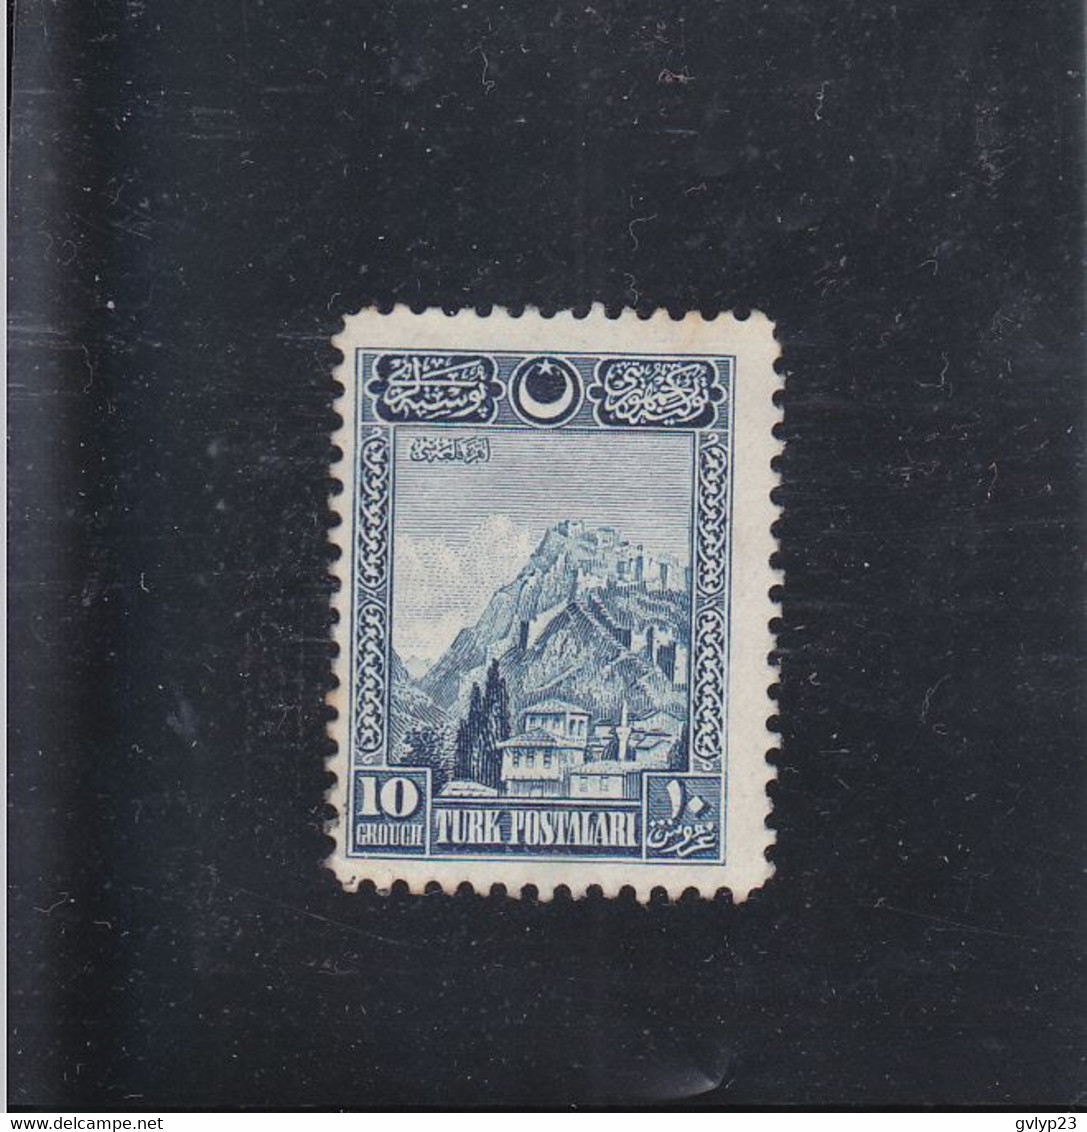 CITADELLE D'ANKARA / NEUF SANS GOMME / 10 Gr. BLEU / N° 703 YVERT ET TELLIER 1926 - Ongebruikt